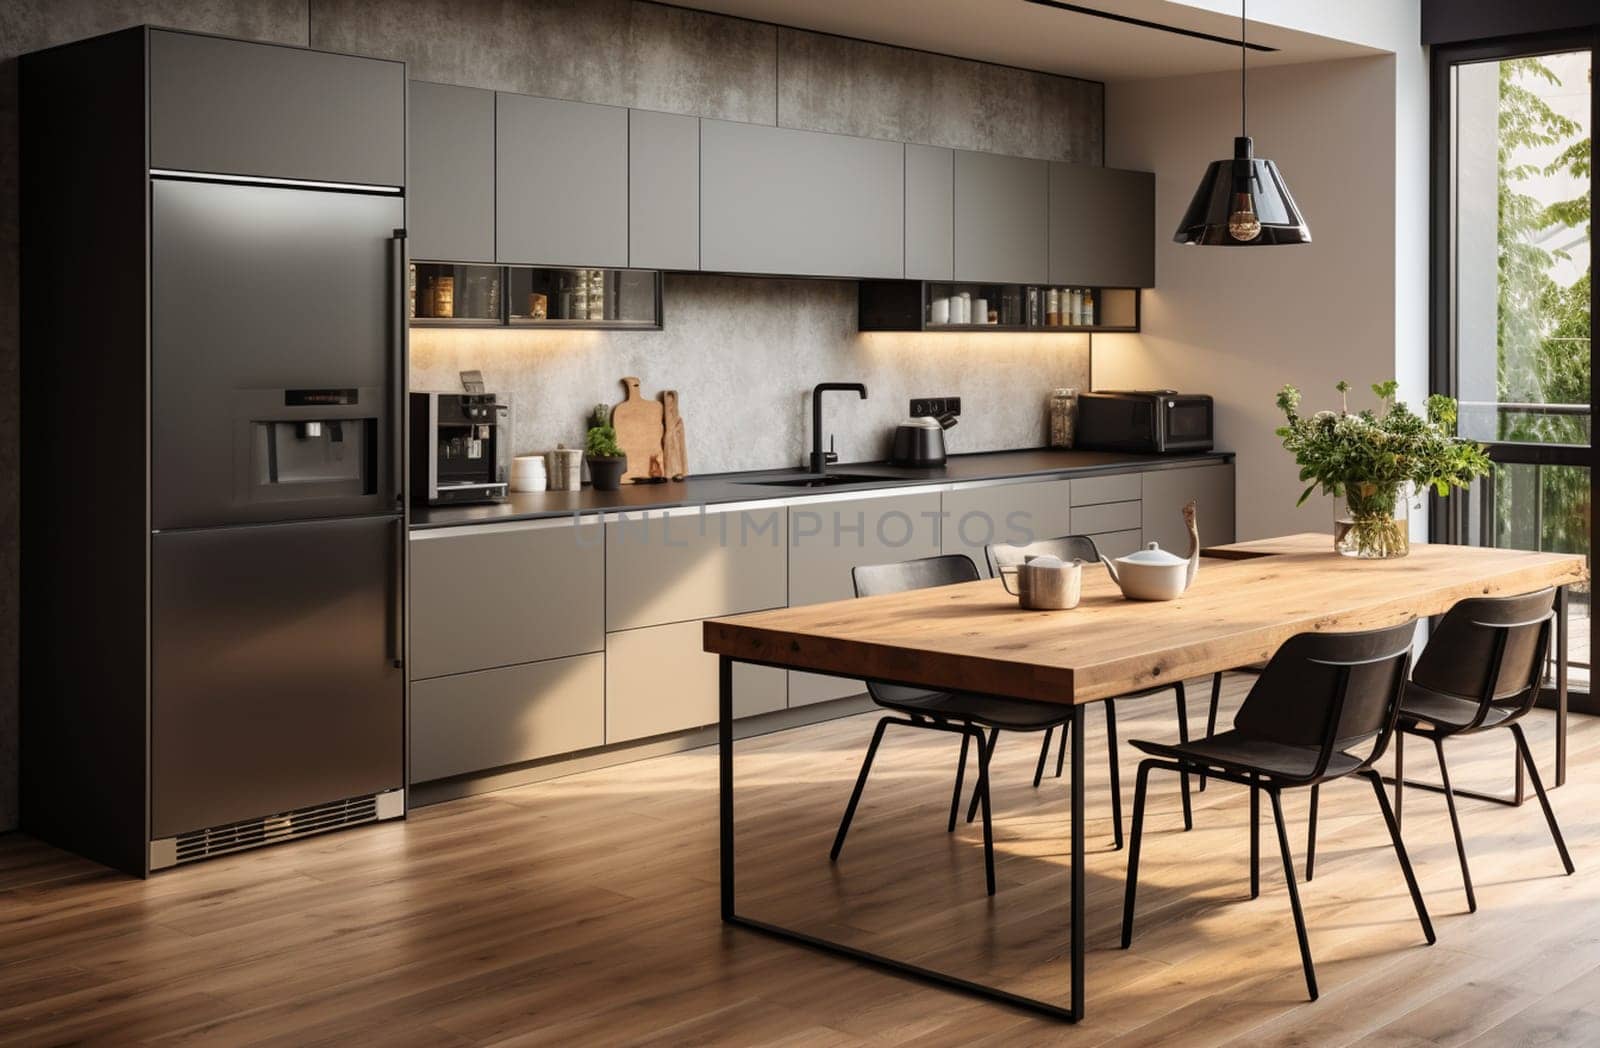 modern loft kitchen interior.3d rendering design concept